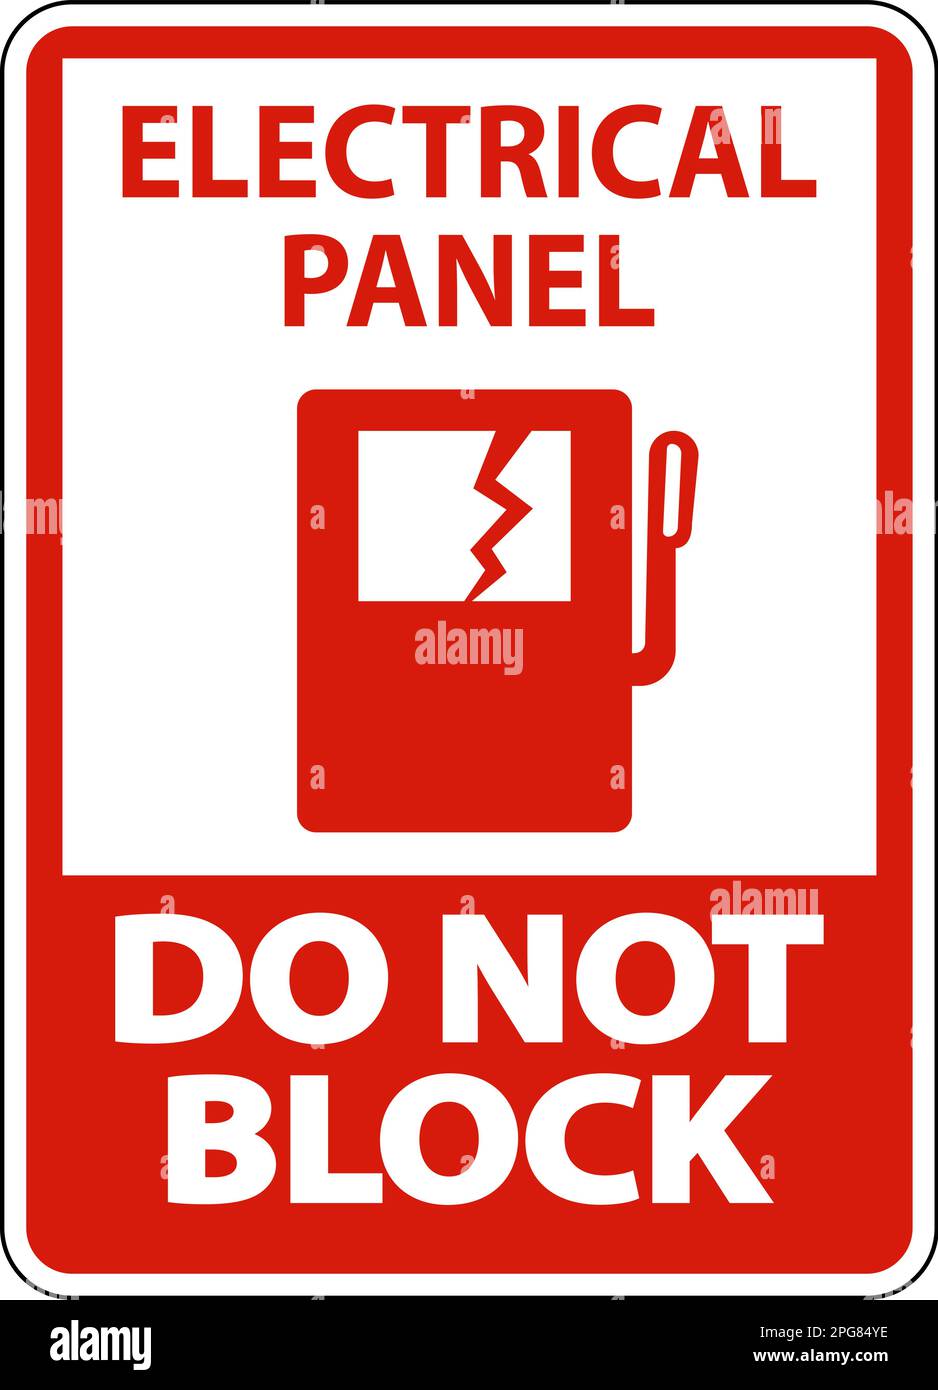 Electrical Panel Do Not Block Floor Label Stock Vector